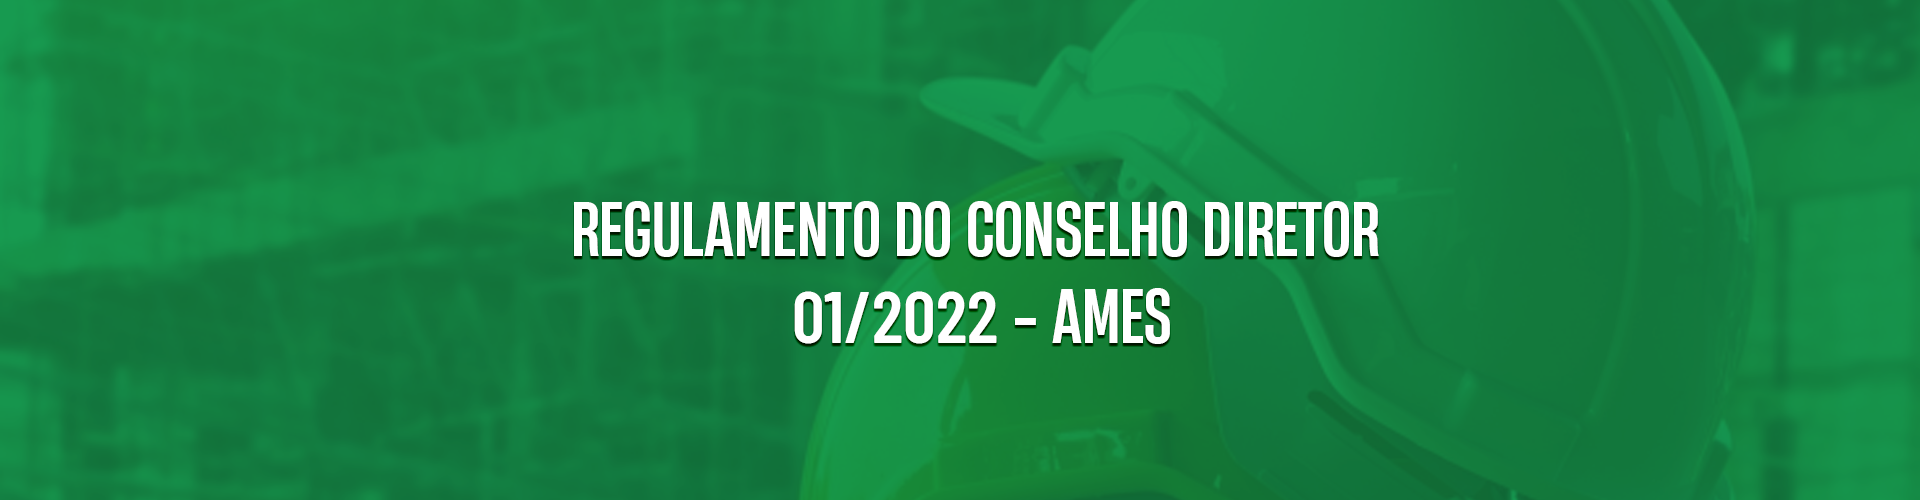 <p>REGULAMENTO DO CONSELHO DIRETOR 01/2022 – AMES</p>
